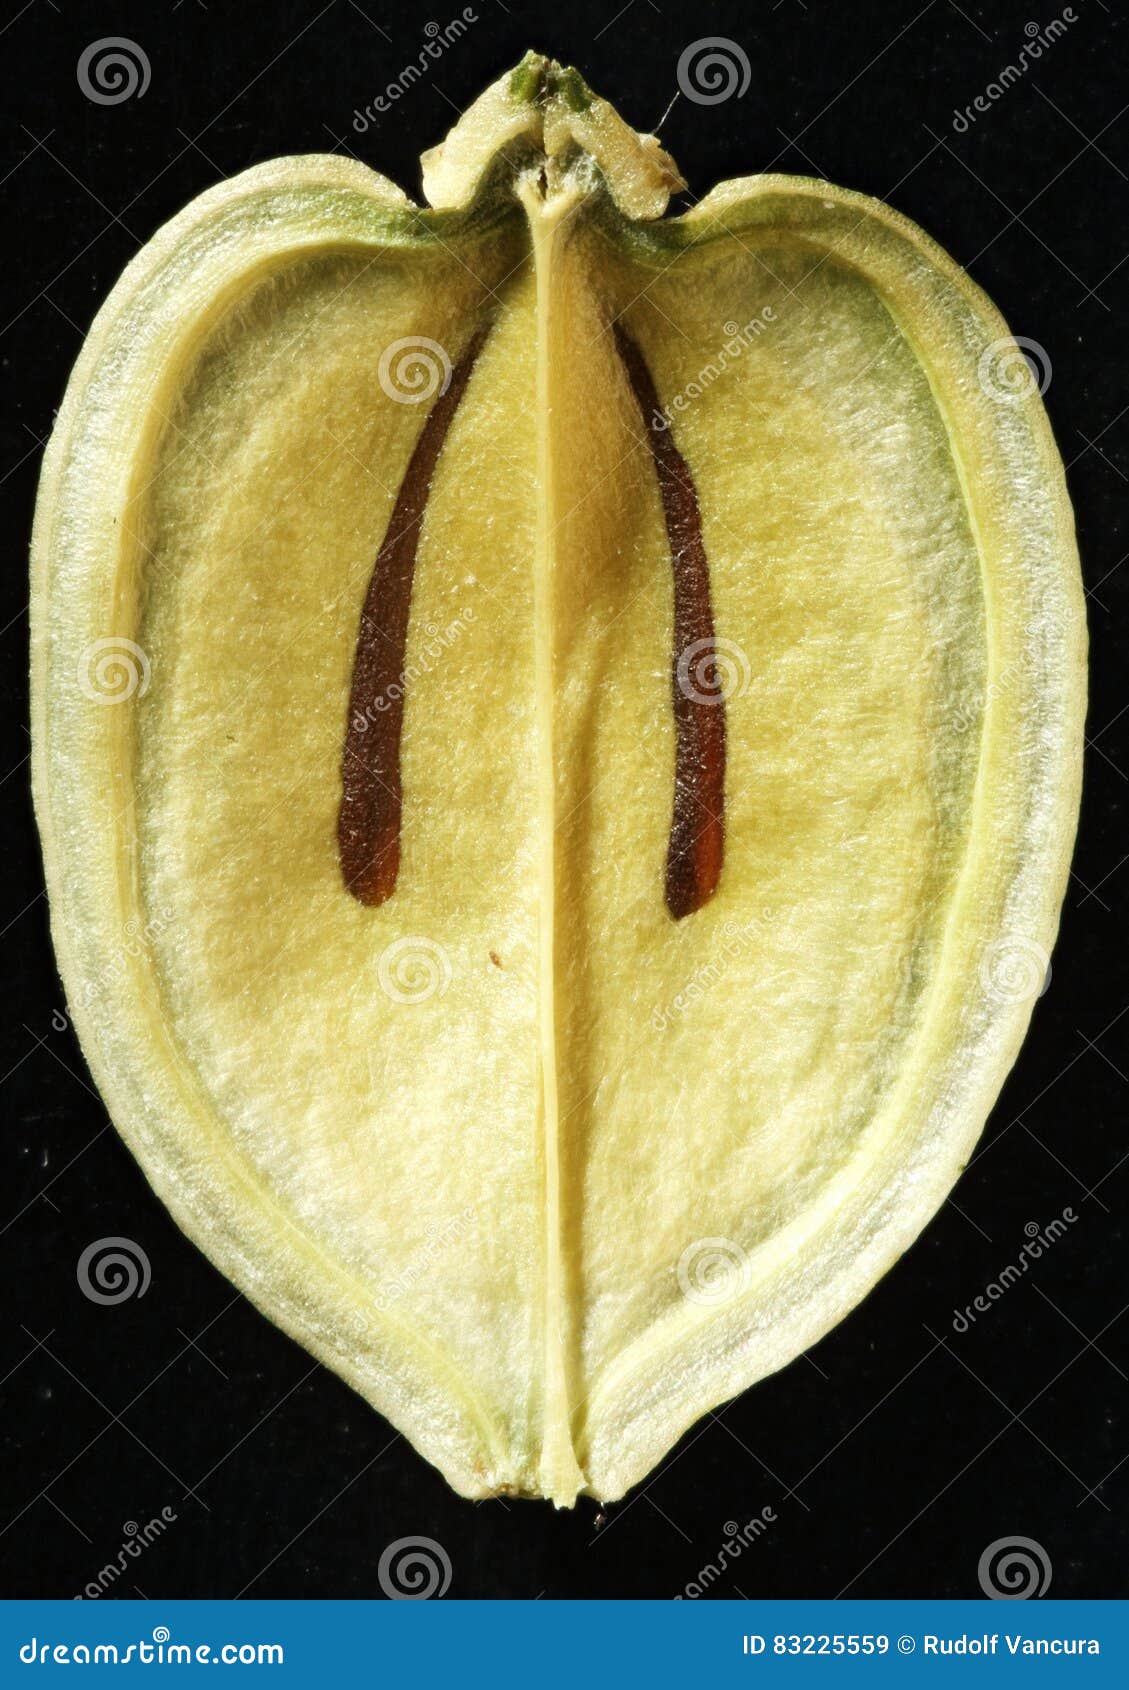 seed capsula inside carum carvi